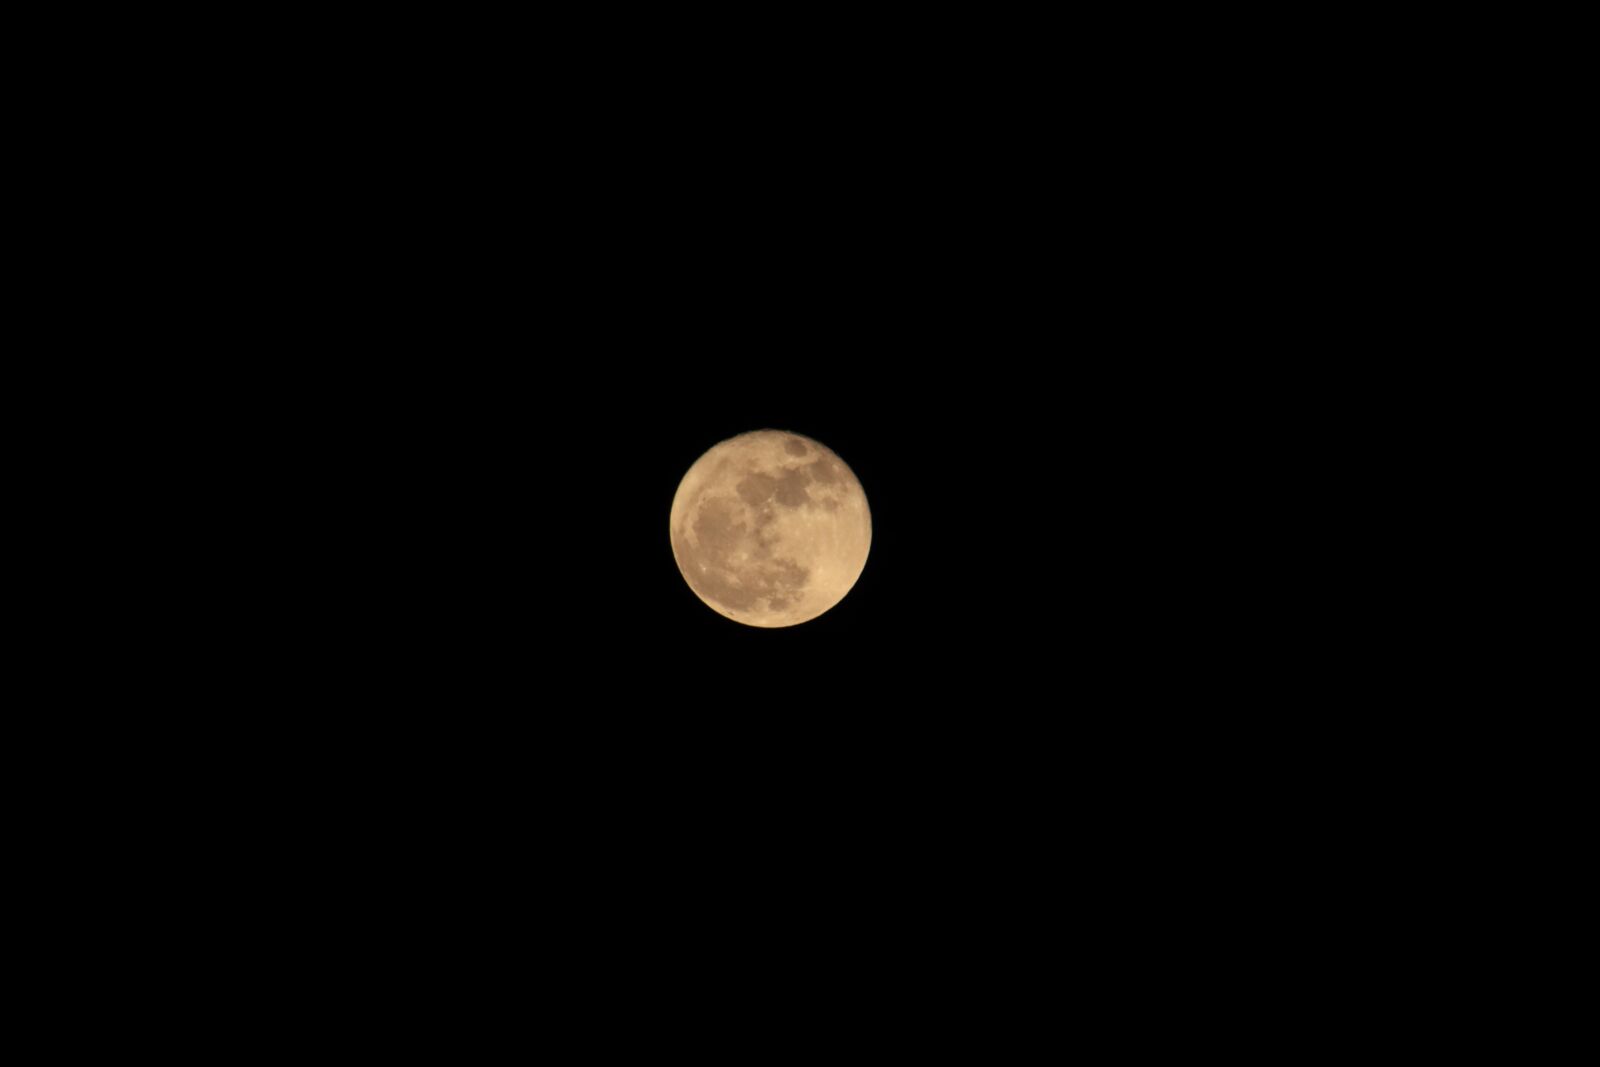 Canon EOS 700D (EOS Rebel T5i / EOS Kiss X7i) sample photo. Moon, full moon, night photography